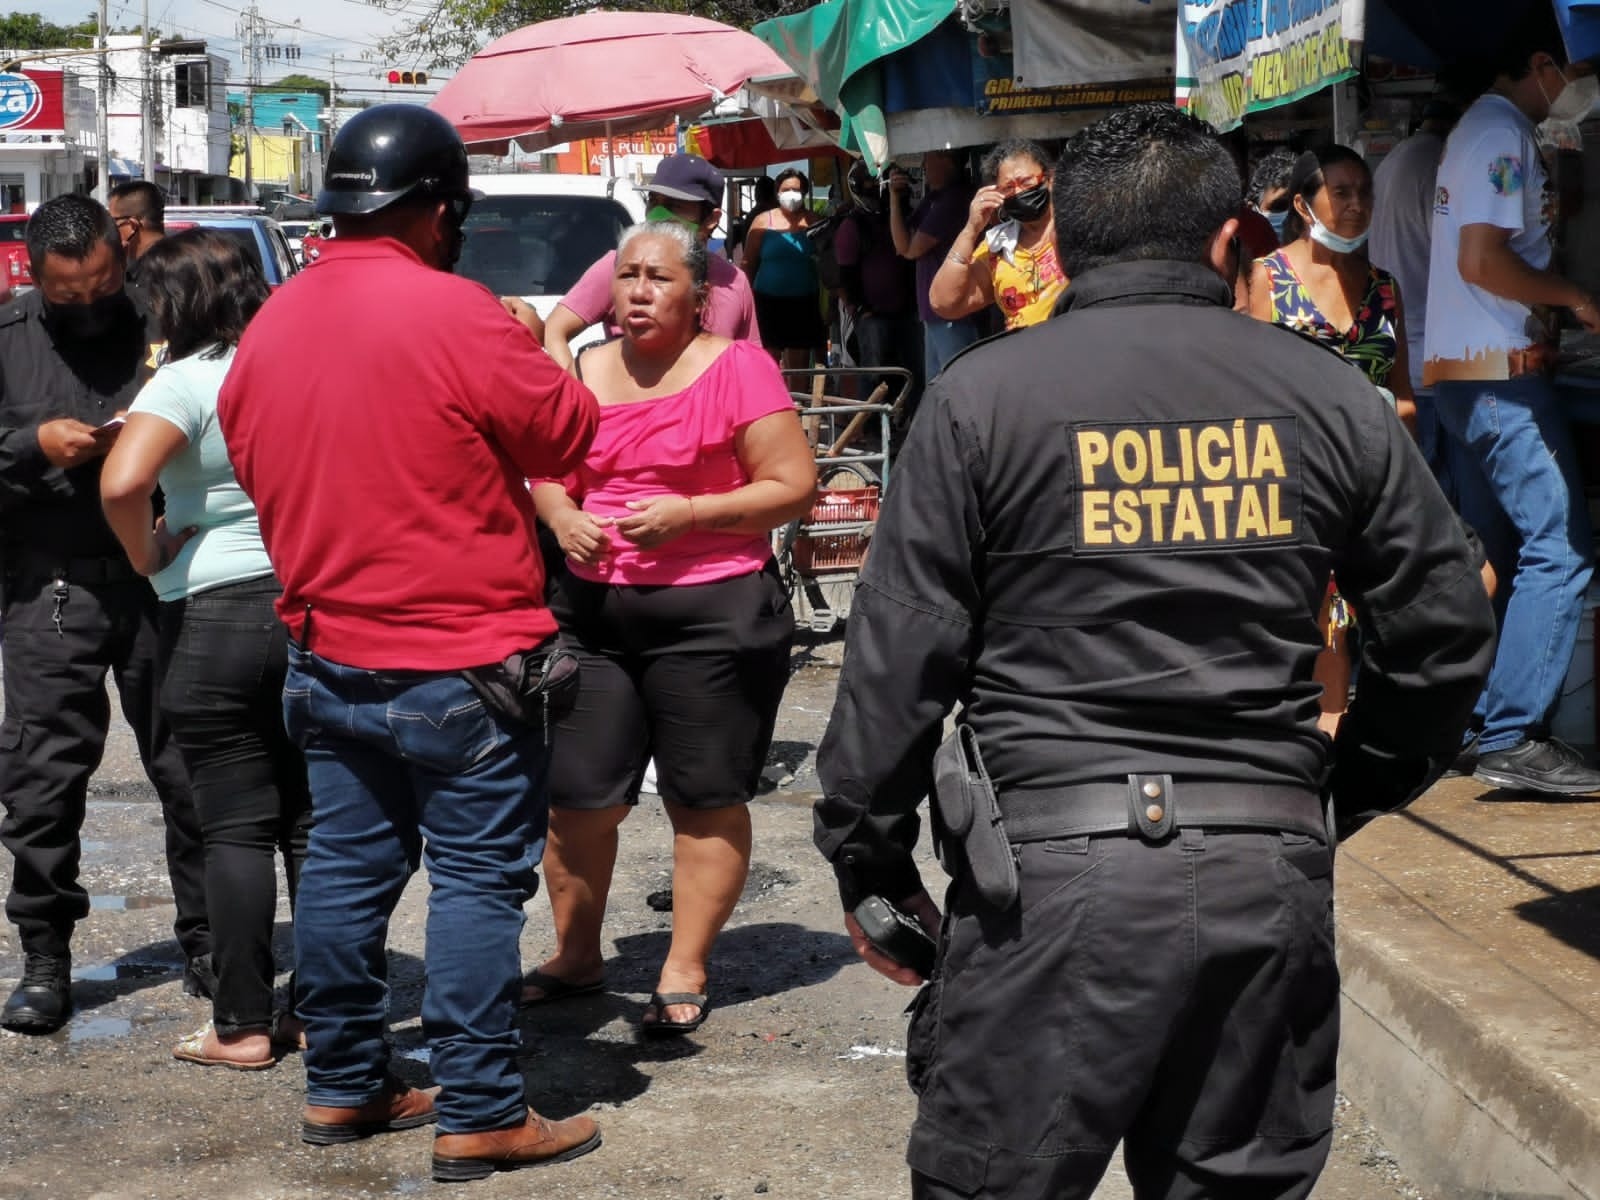 Ciudad del Carmen: Puesteros y clientes protagonizan pelea campal en el mercado del Chechén